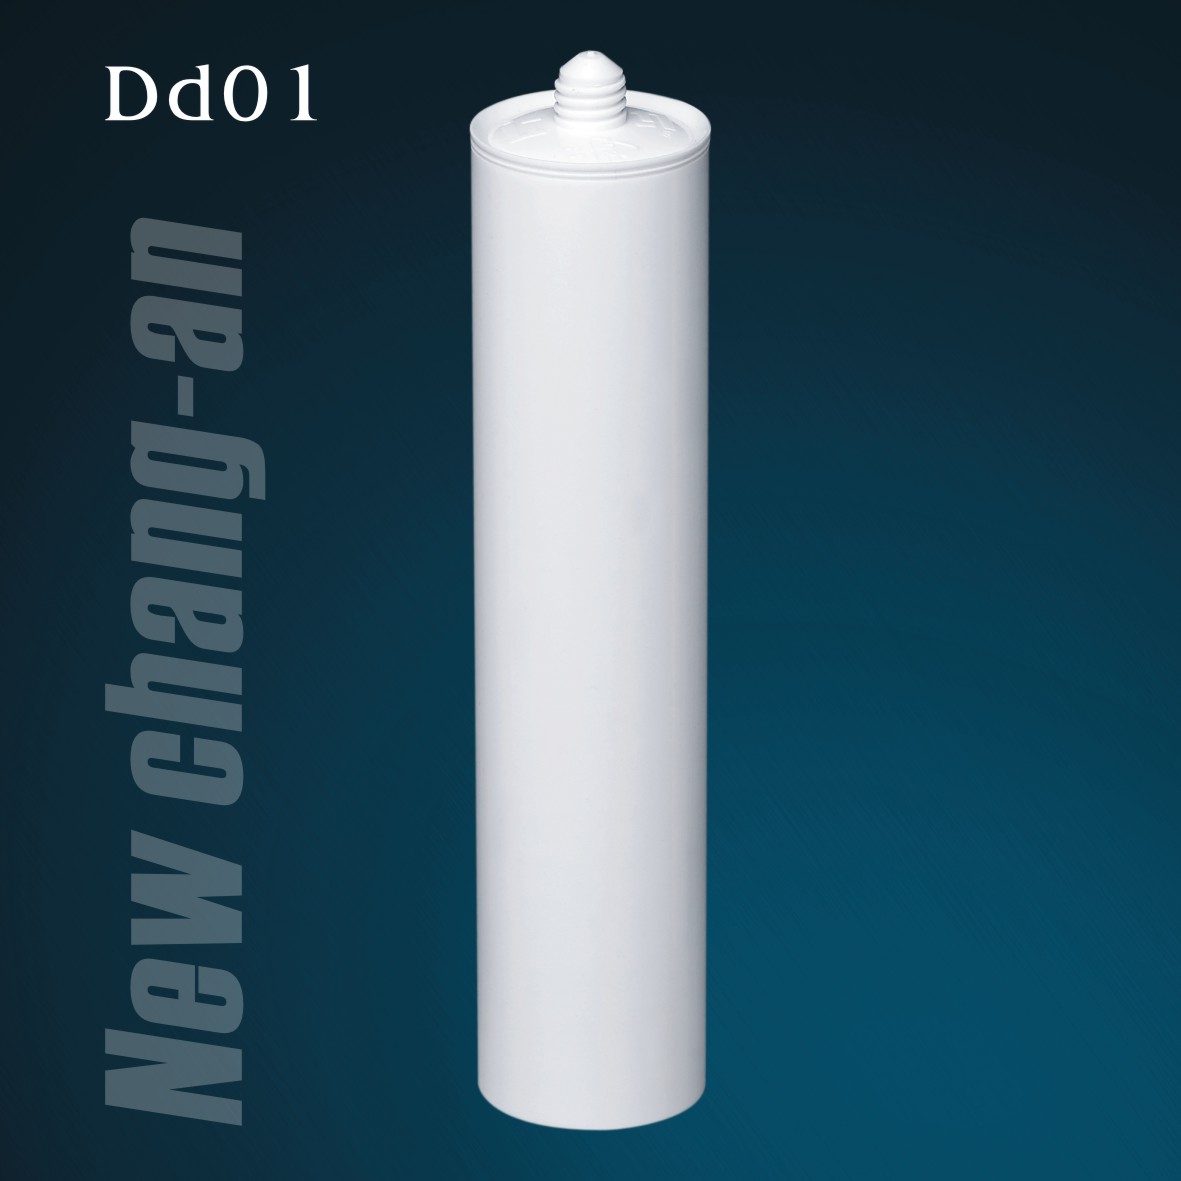 300 مل خرطوشة بلاستيكية HDPE فارغة لمانع تسرب السيليكون Dd01